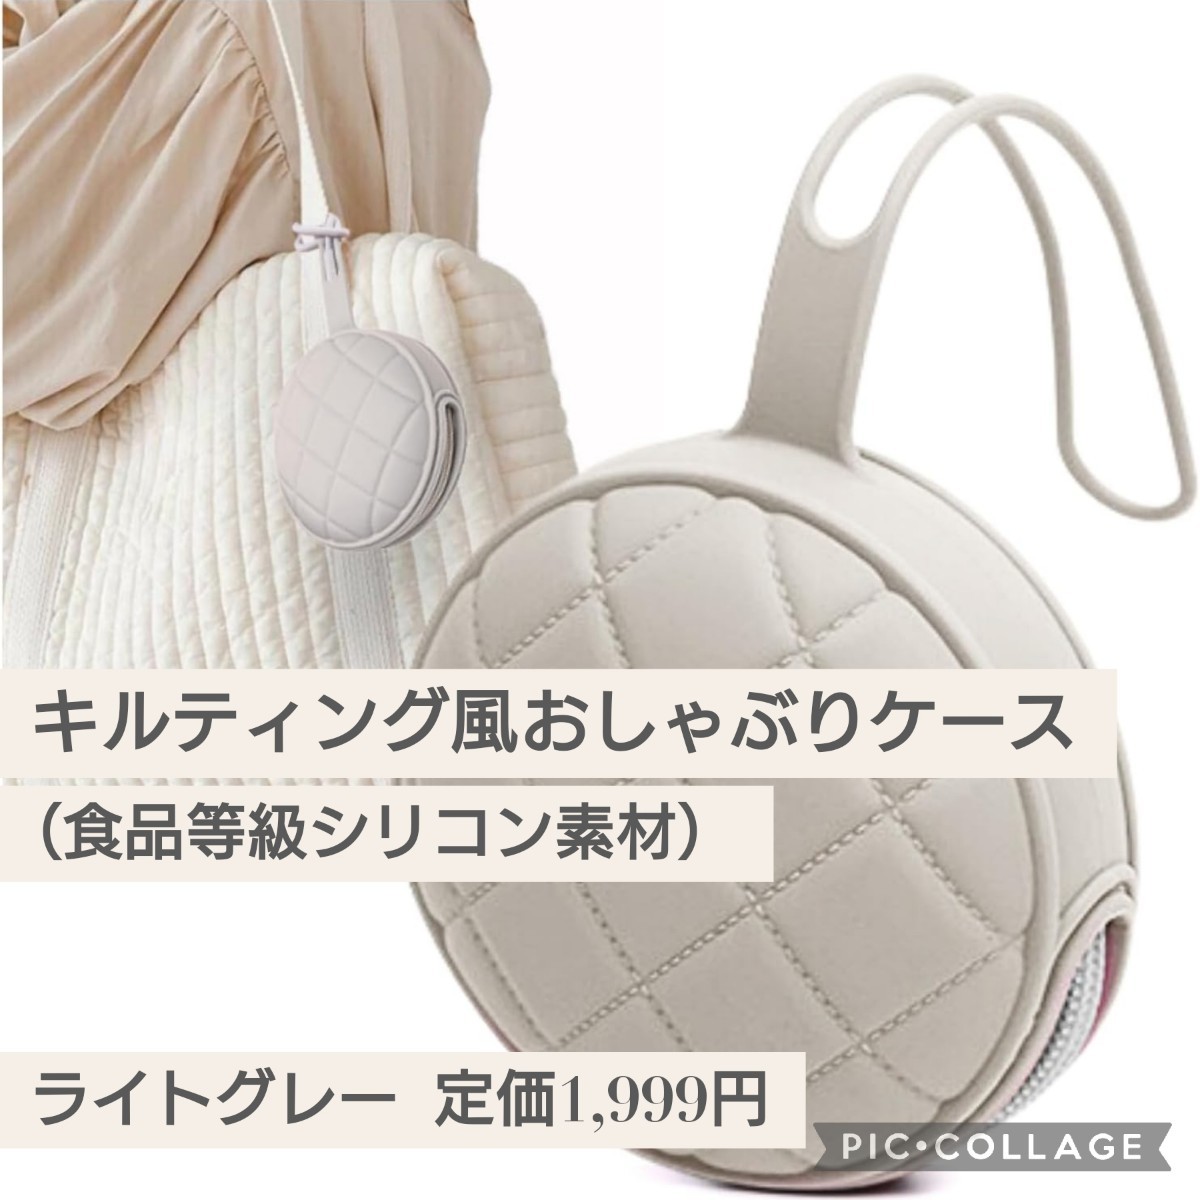  новый товар обычная цена 1,999 иен светло-серый цвет соска-пустышка кейс держатель ремешок силикон застежка-молния коляска перевозка стеганое полотно способ сумка 